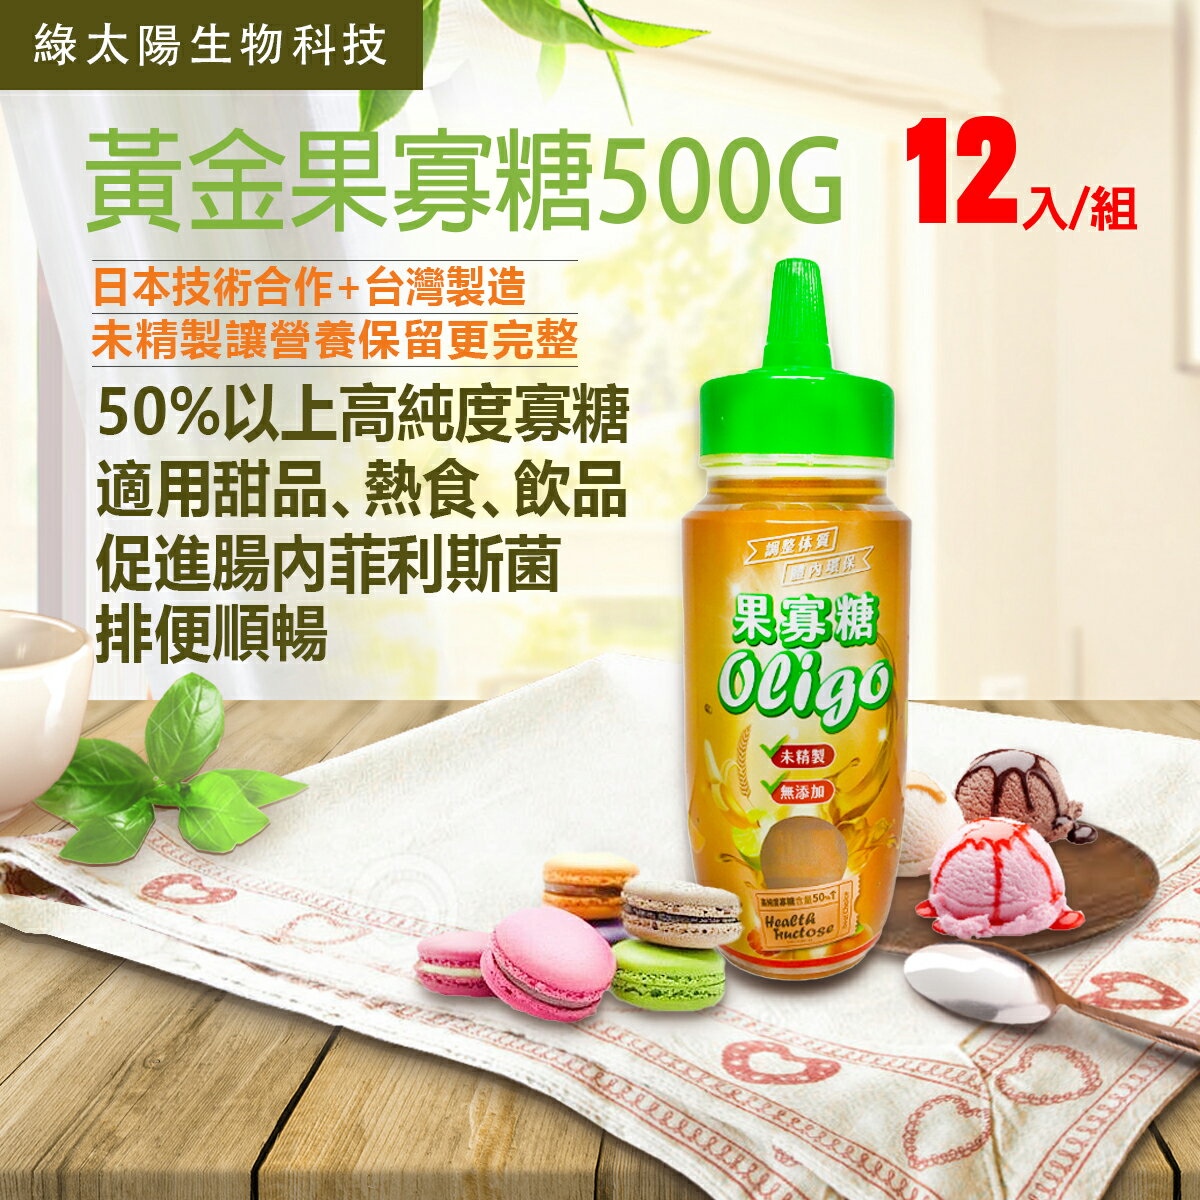 《綠太陽》黃金果寡糖 500g/罐 - 12罐/箱